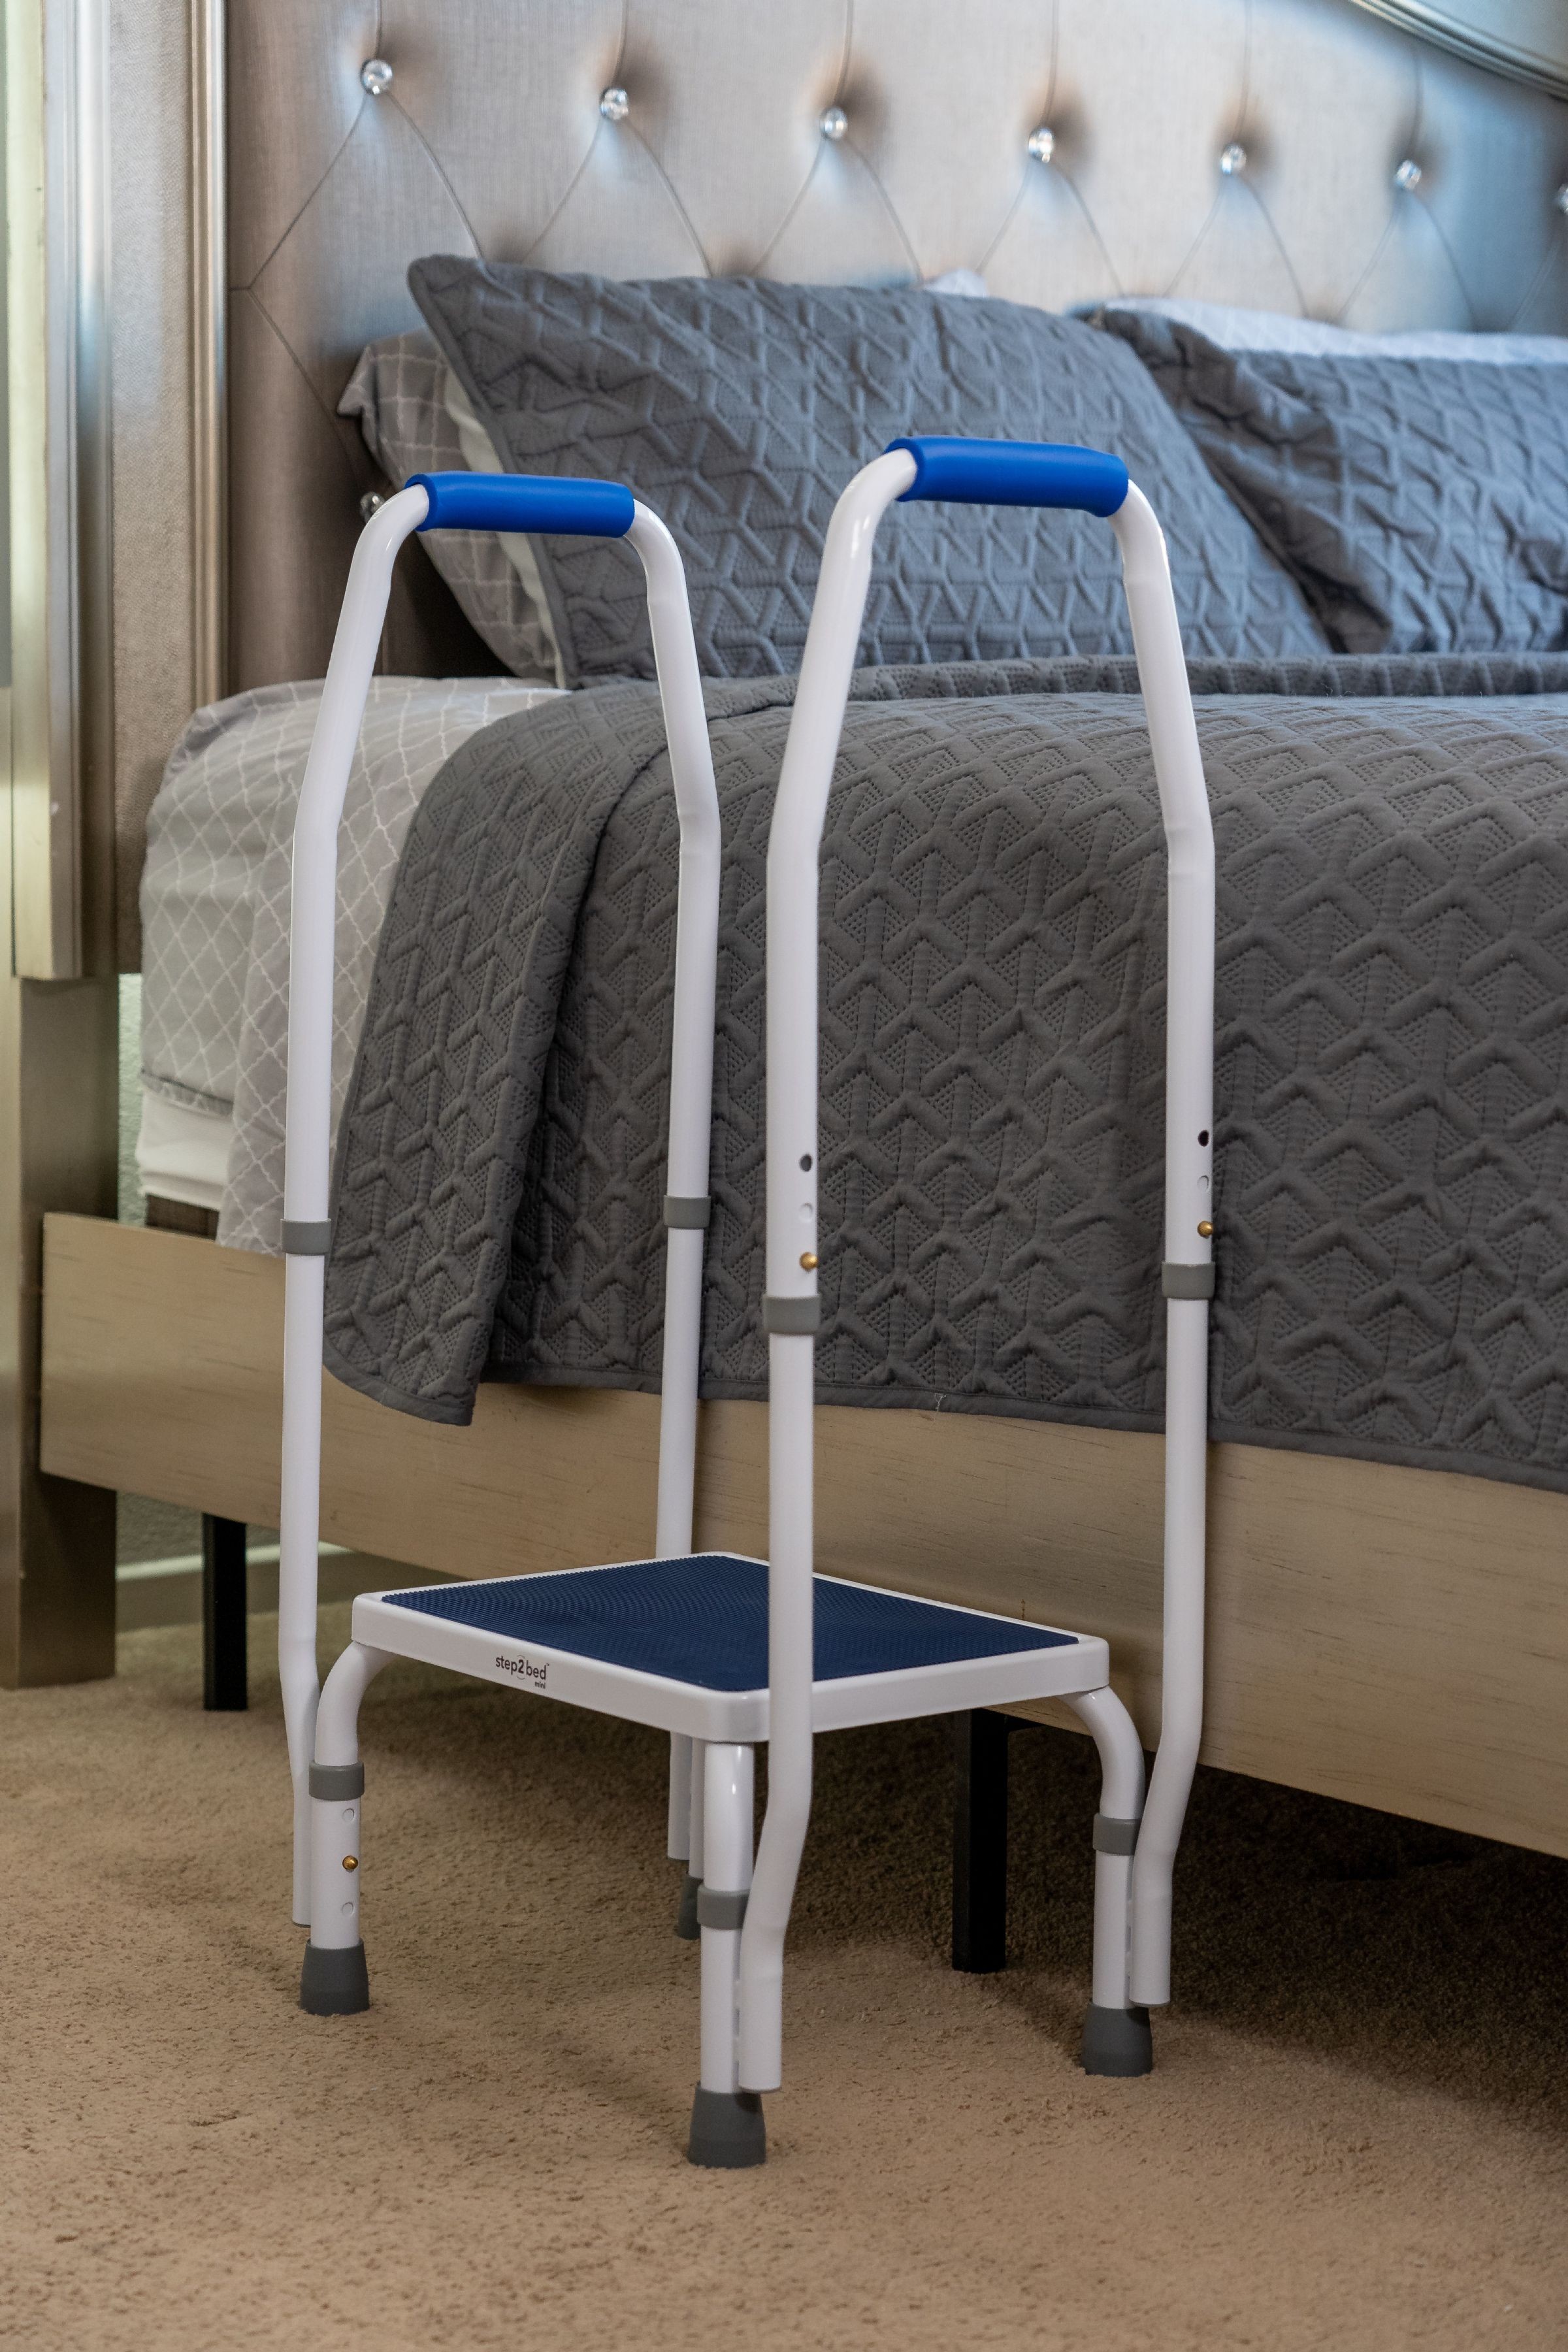 bed side rails for elderly